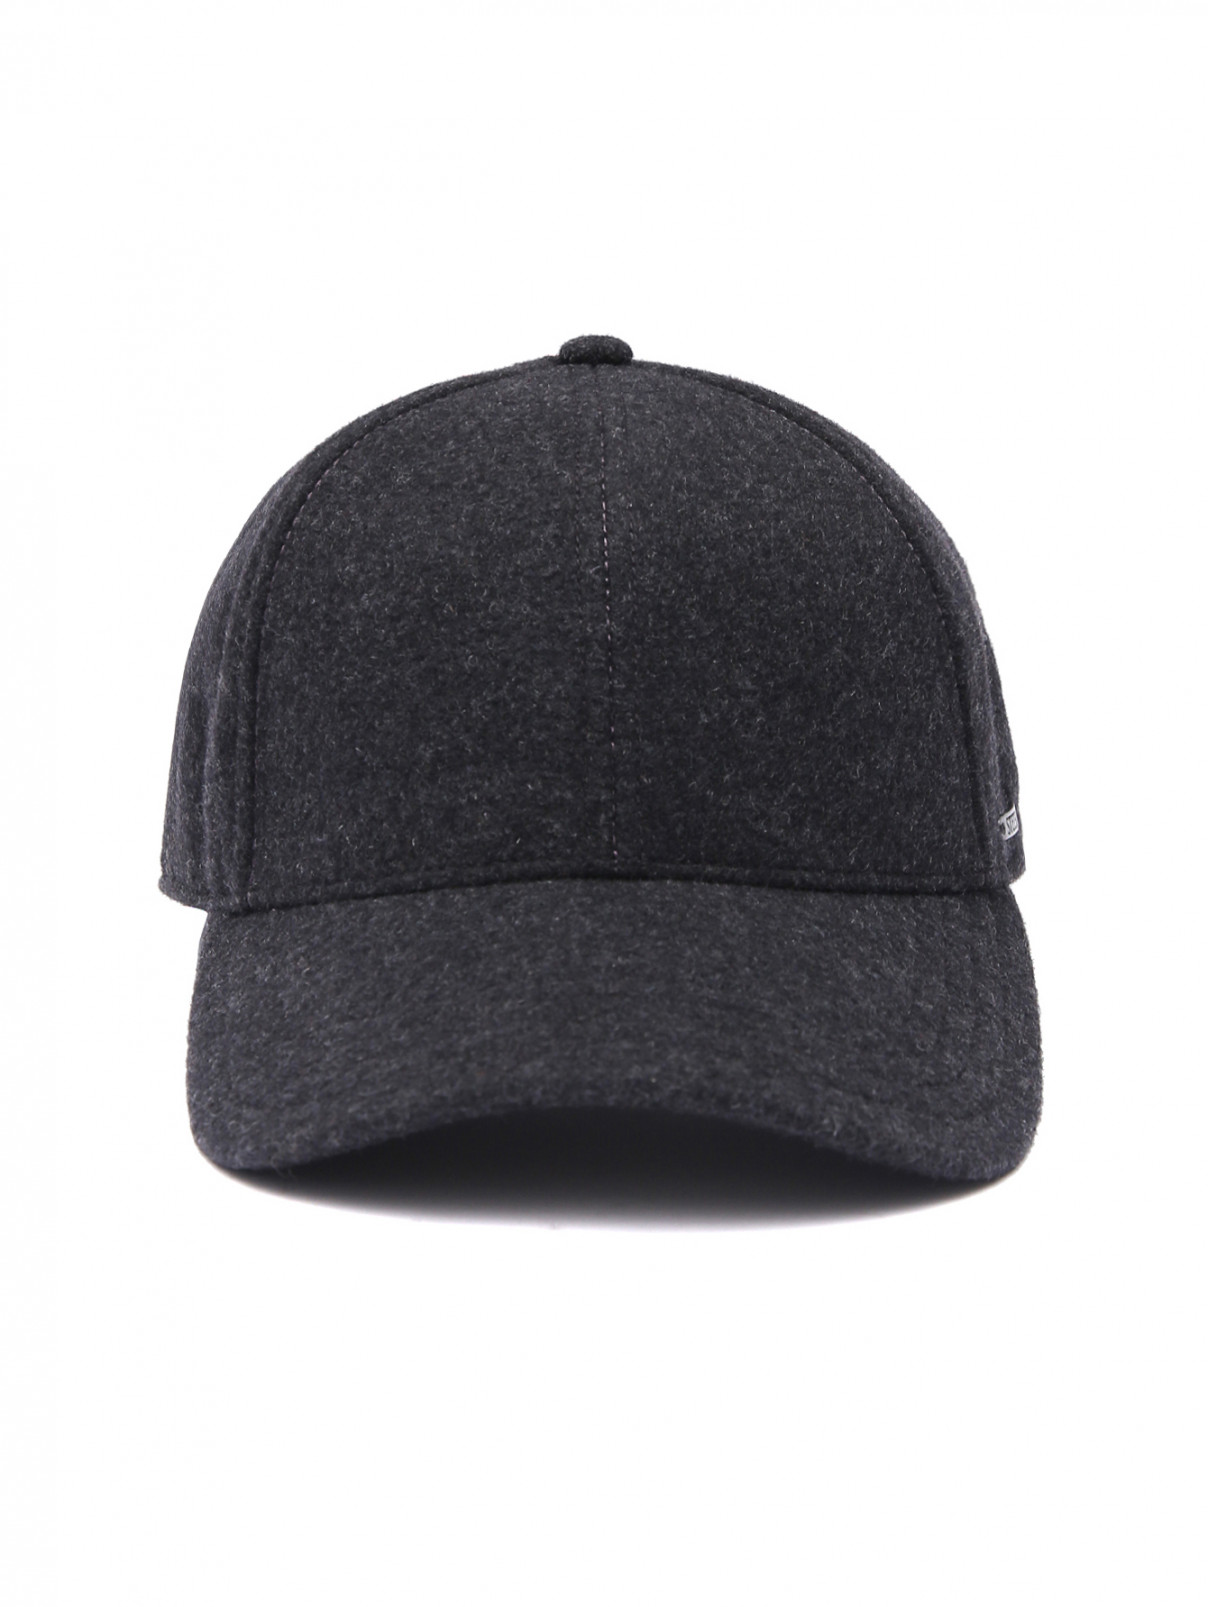 Однотонная кепка из шерсти Stetson  –  Общий вид  – Цвет:  Черный